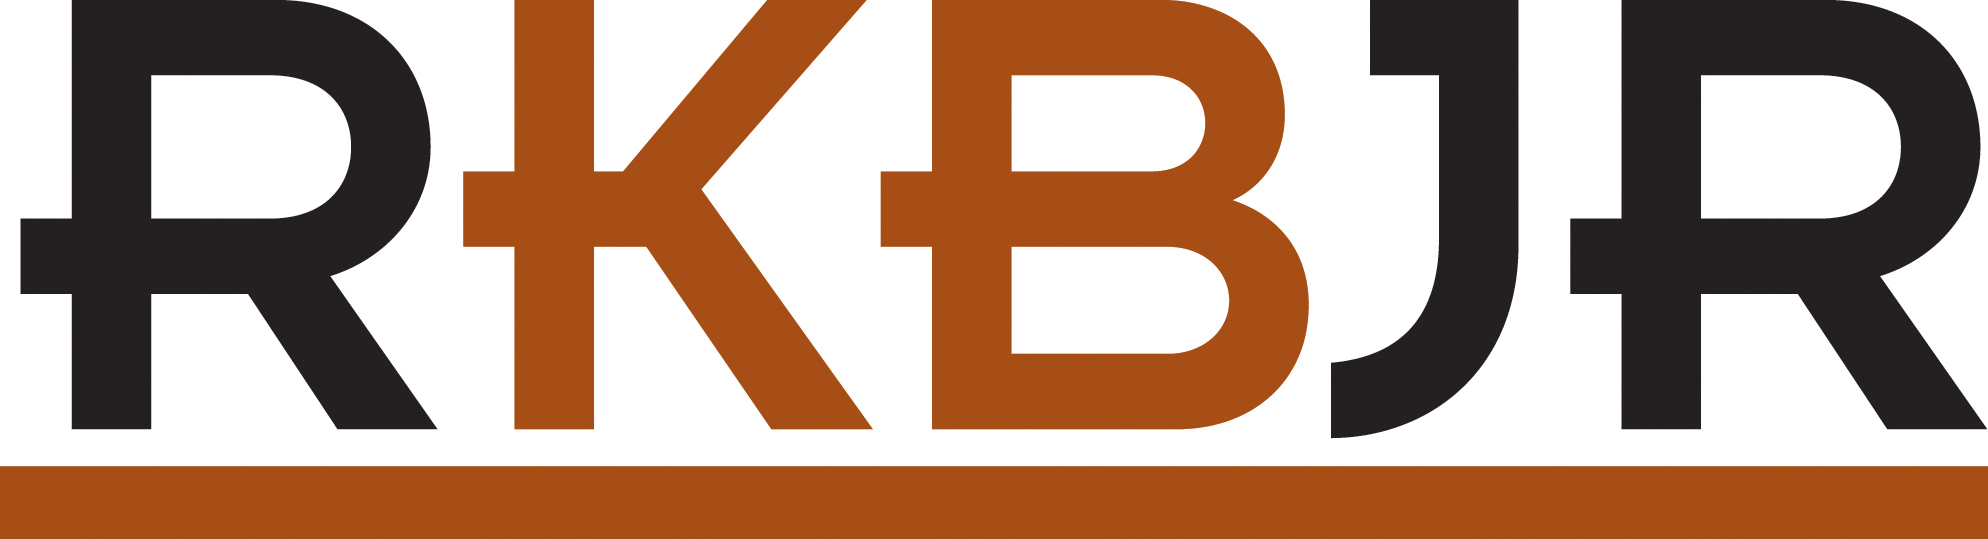 Robert Kevin Brown Jr., Esq. Logo